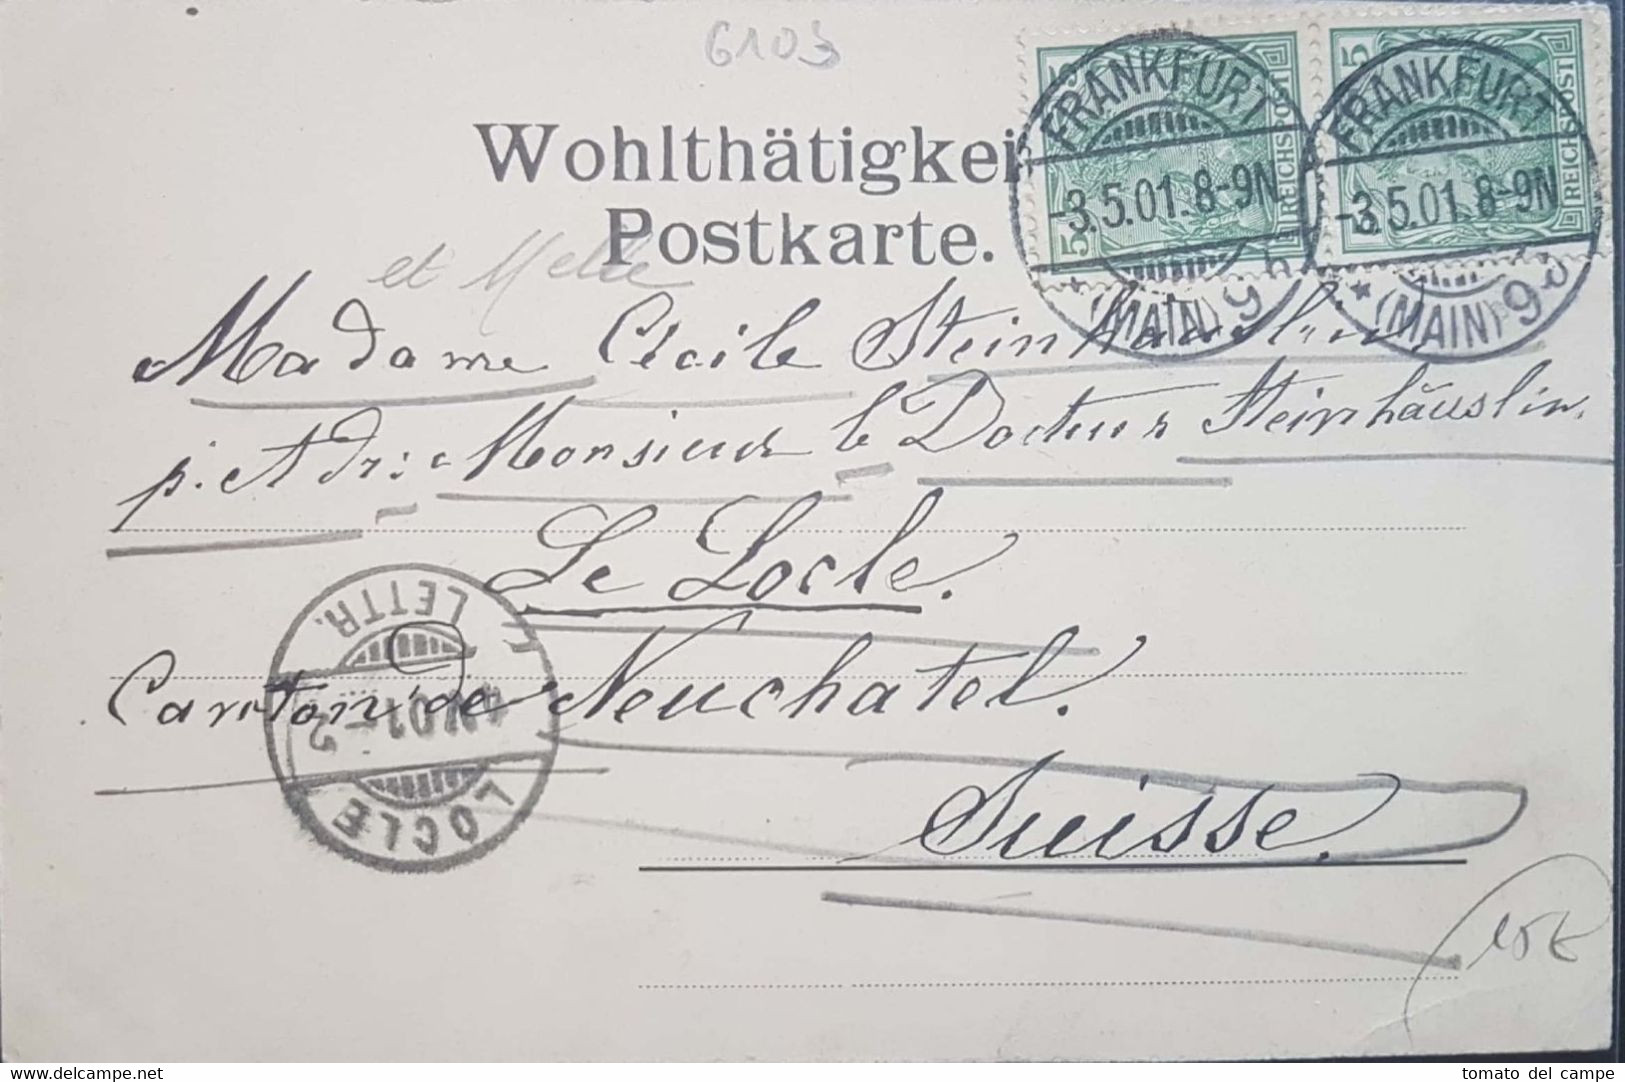 AK Griesheim 1901 Nach Neuchatel Schweiz Explosion Chemie Fabrik - Griesheim